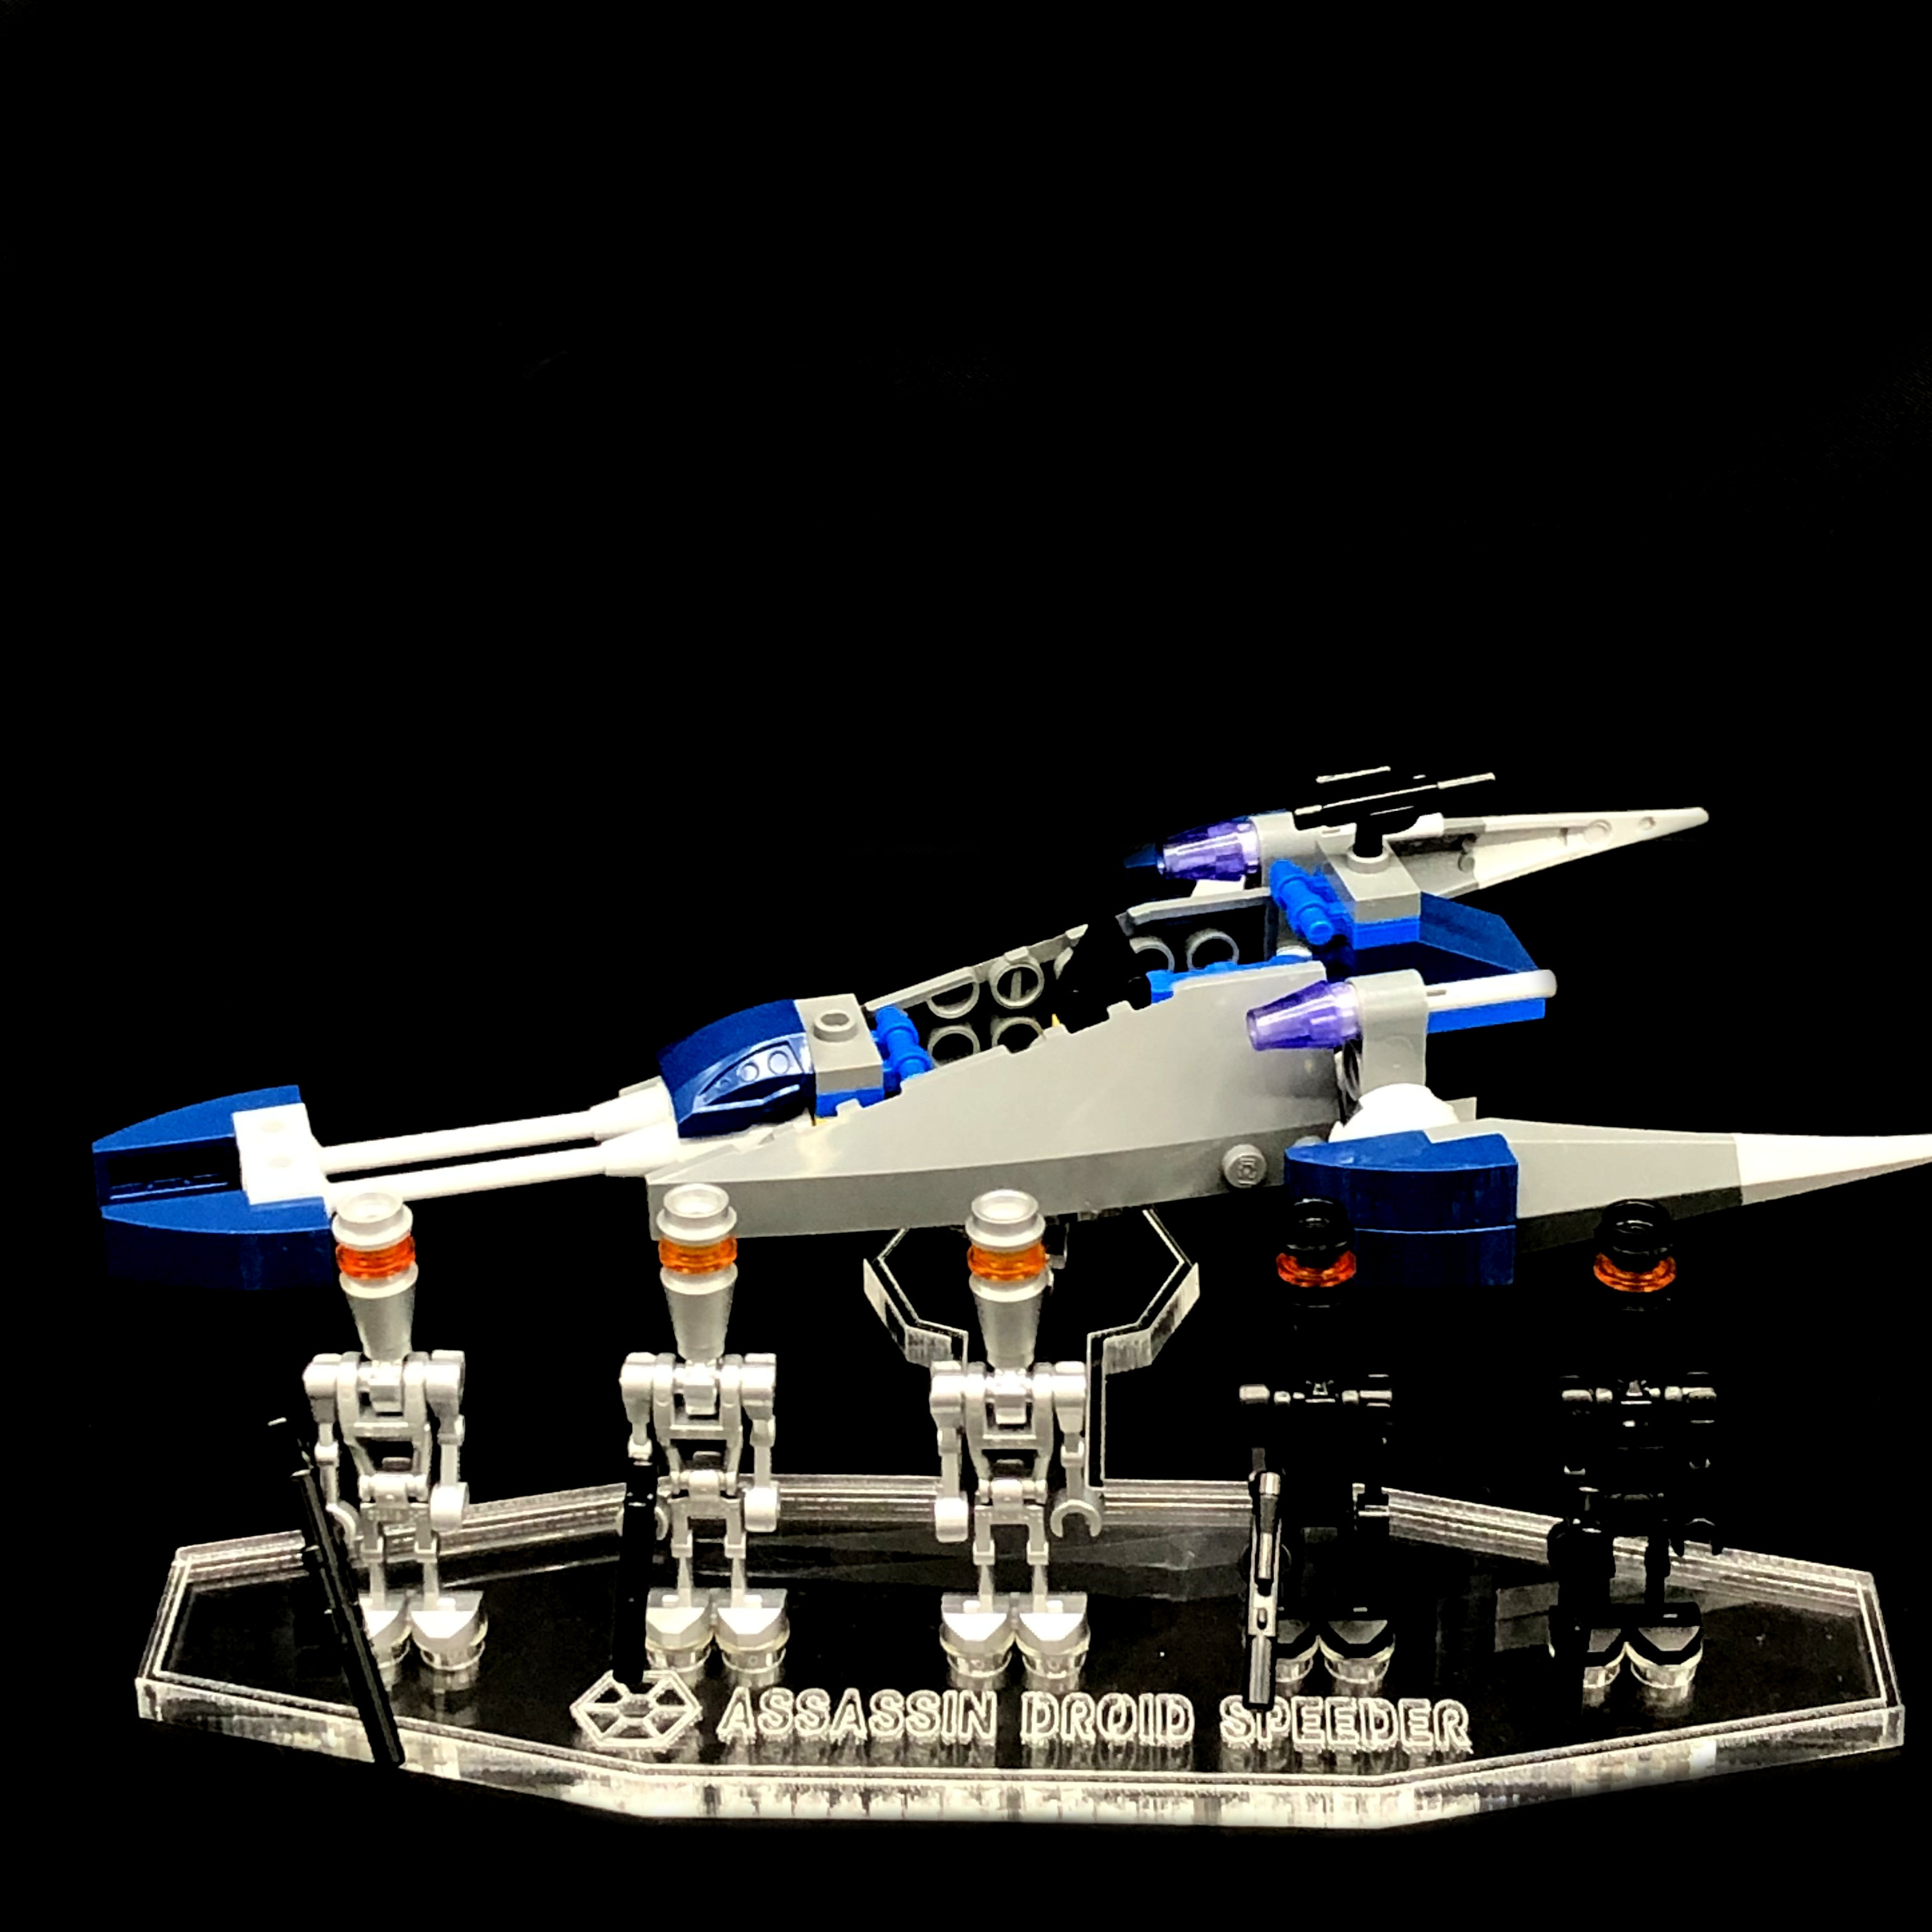 Acryl Deko Präsentation Standfuss LEGO Modell 8015 Assassin Droids Battle Pack